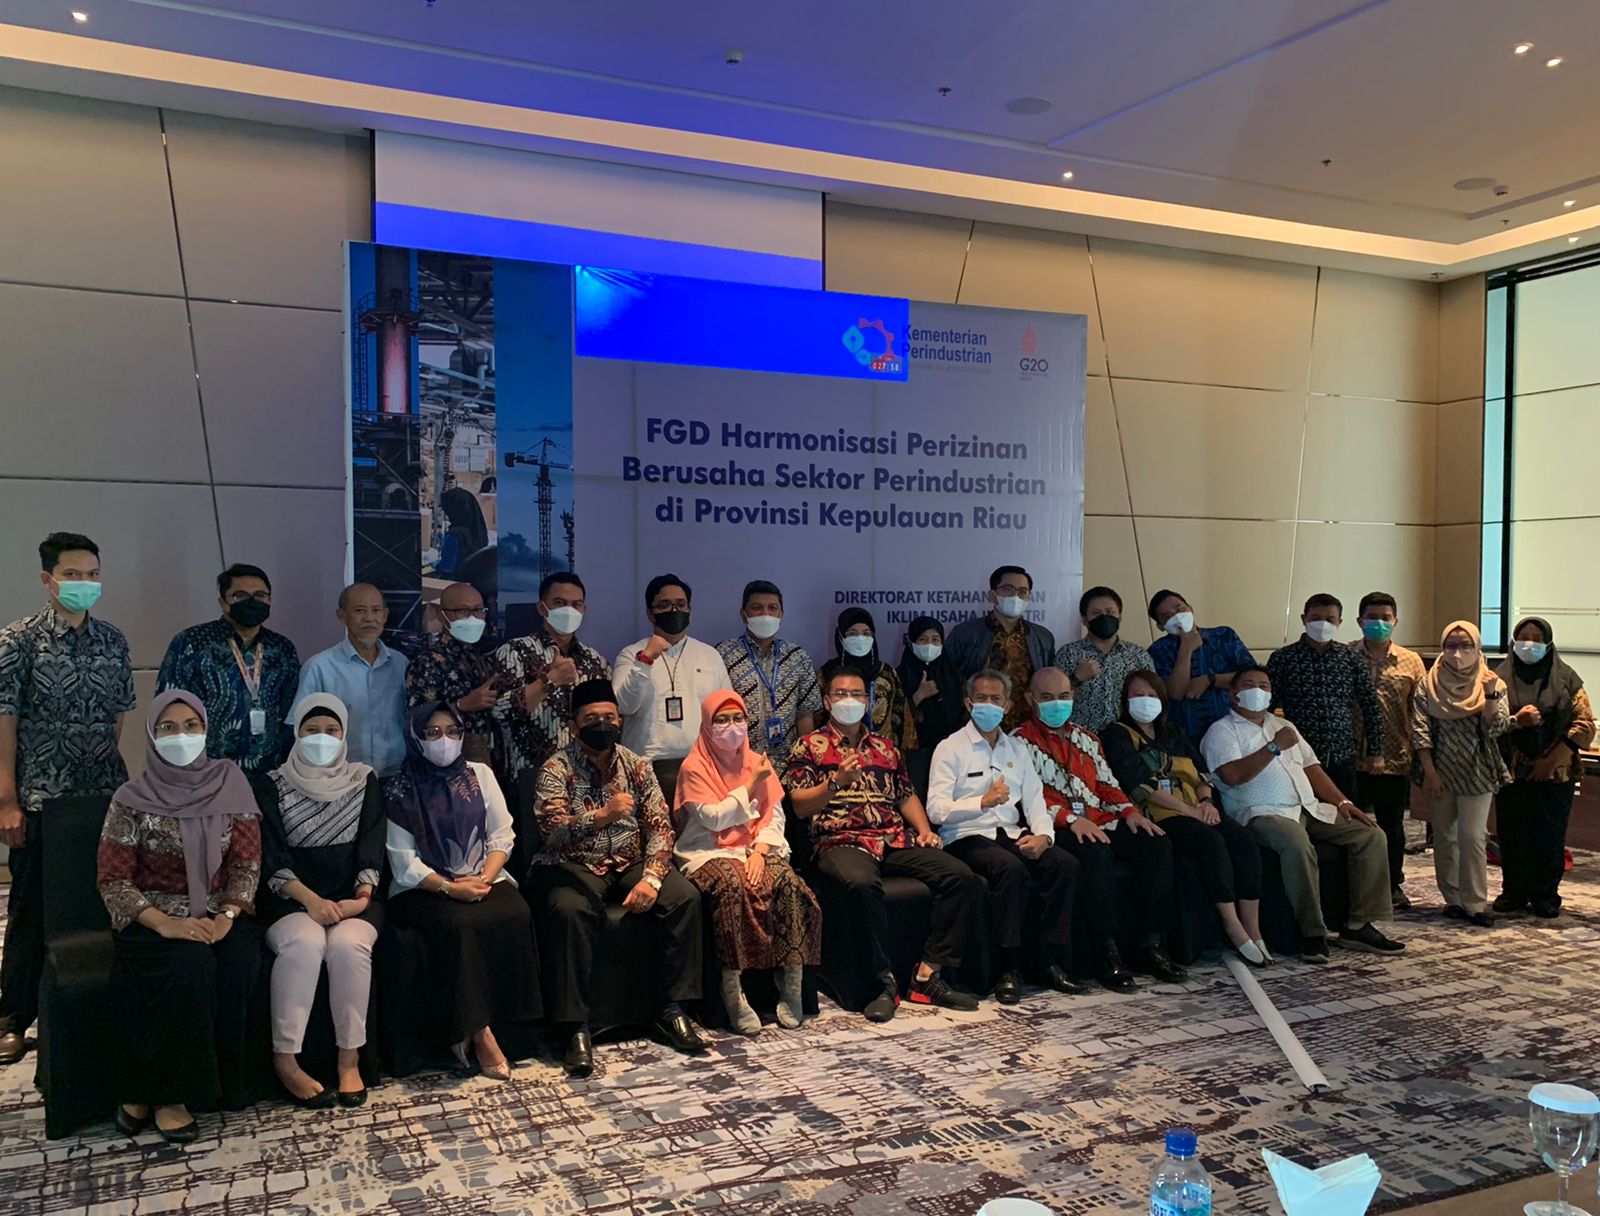 FGD Harmonisasi Perizinan Berusaha Sektor Perindustrian di Provinsi Kepulauan Riau